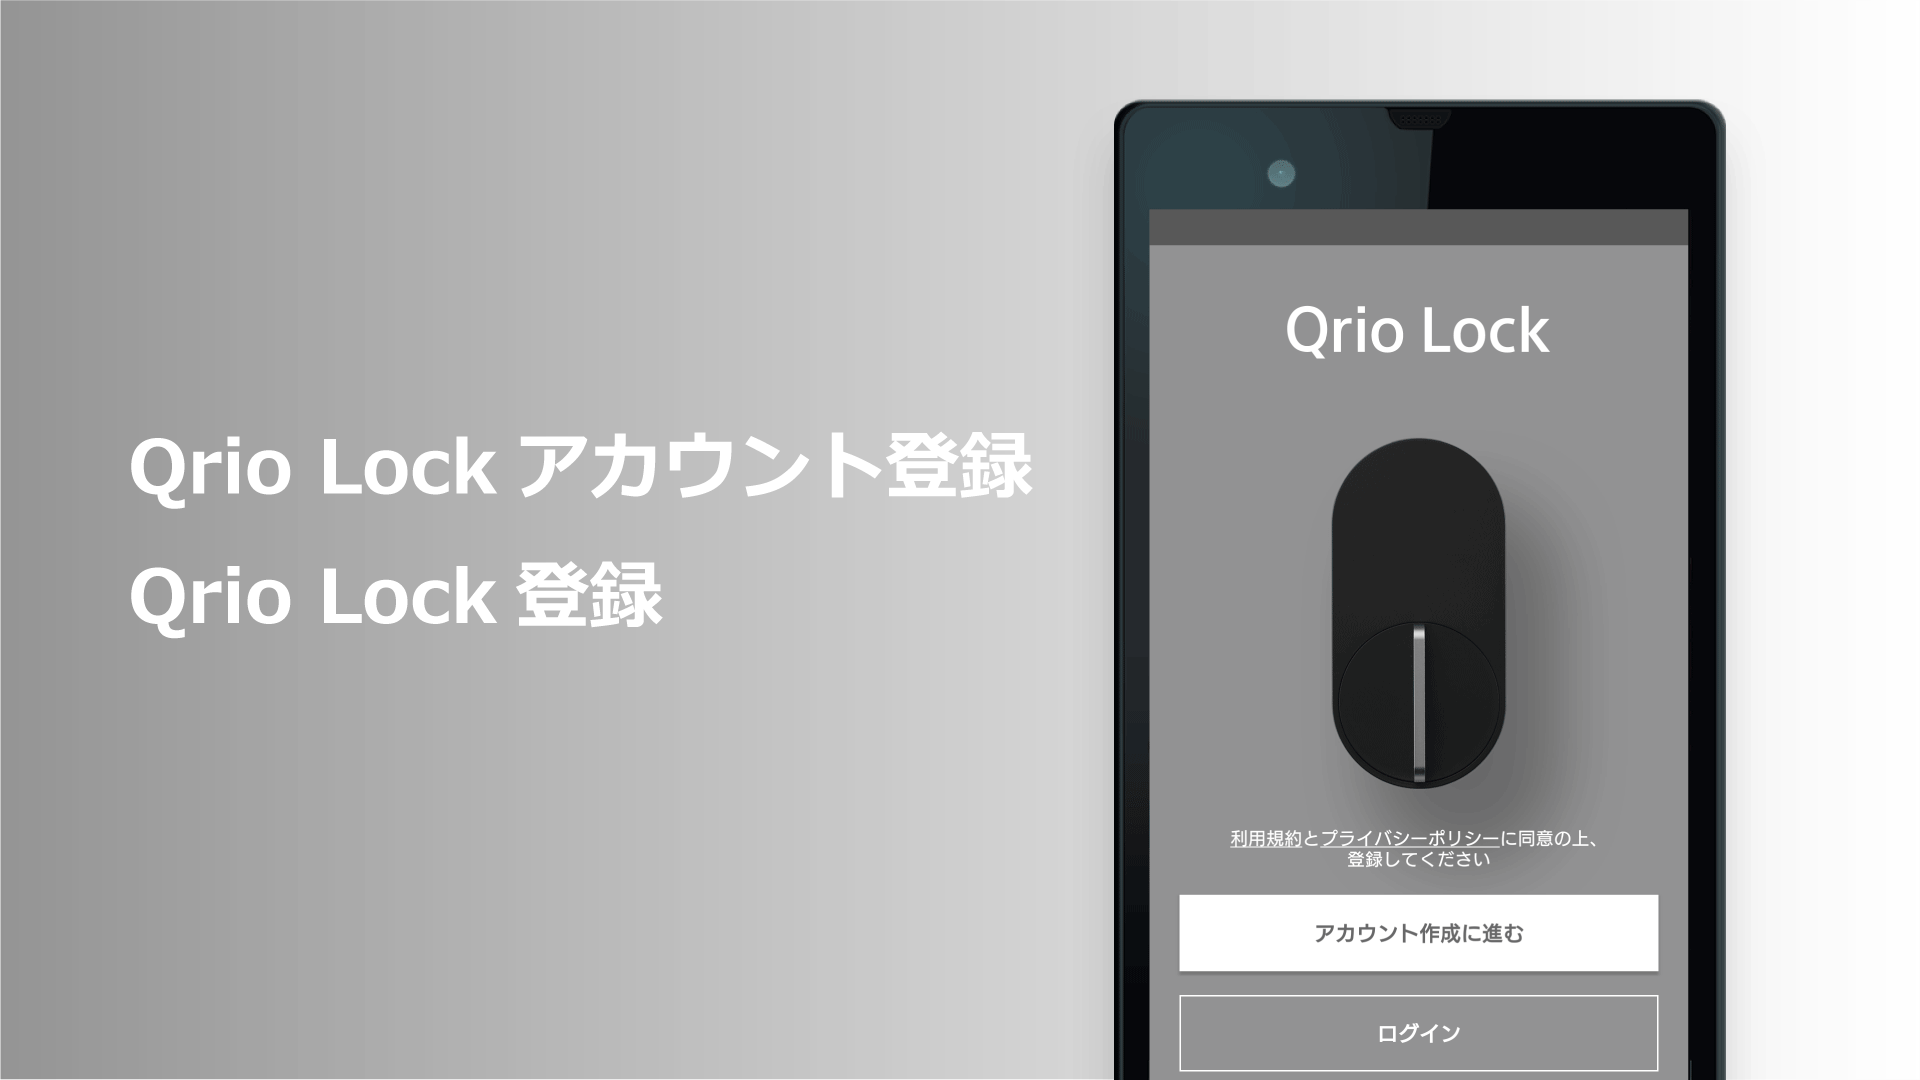 [機器][アプリ]・MANOMAアプリへのQrio Lock登録方法